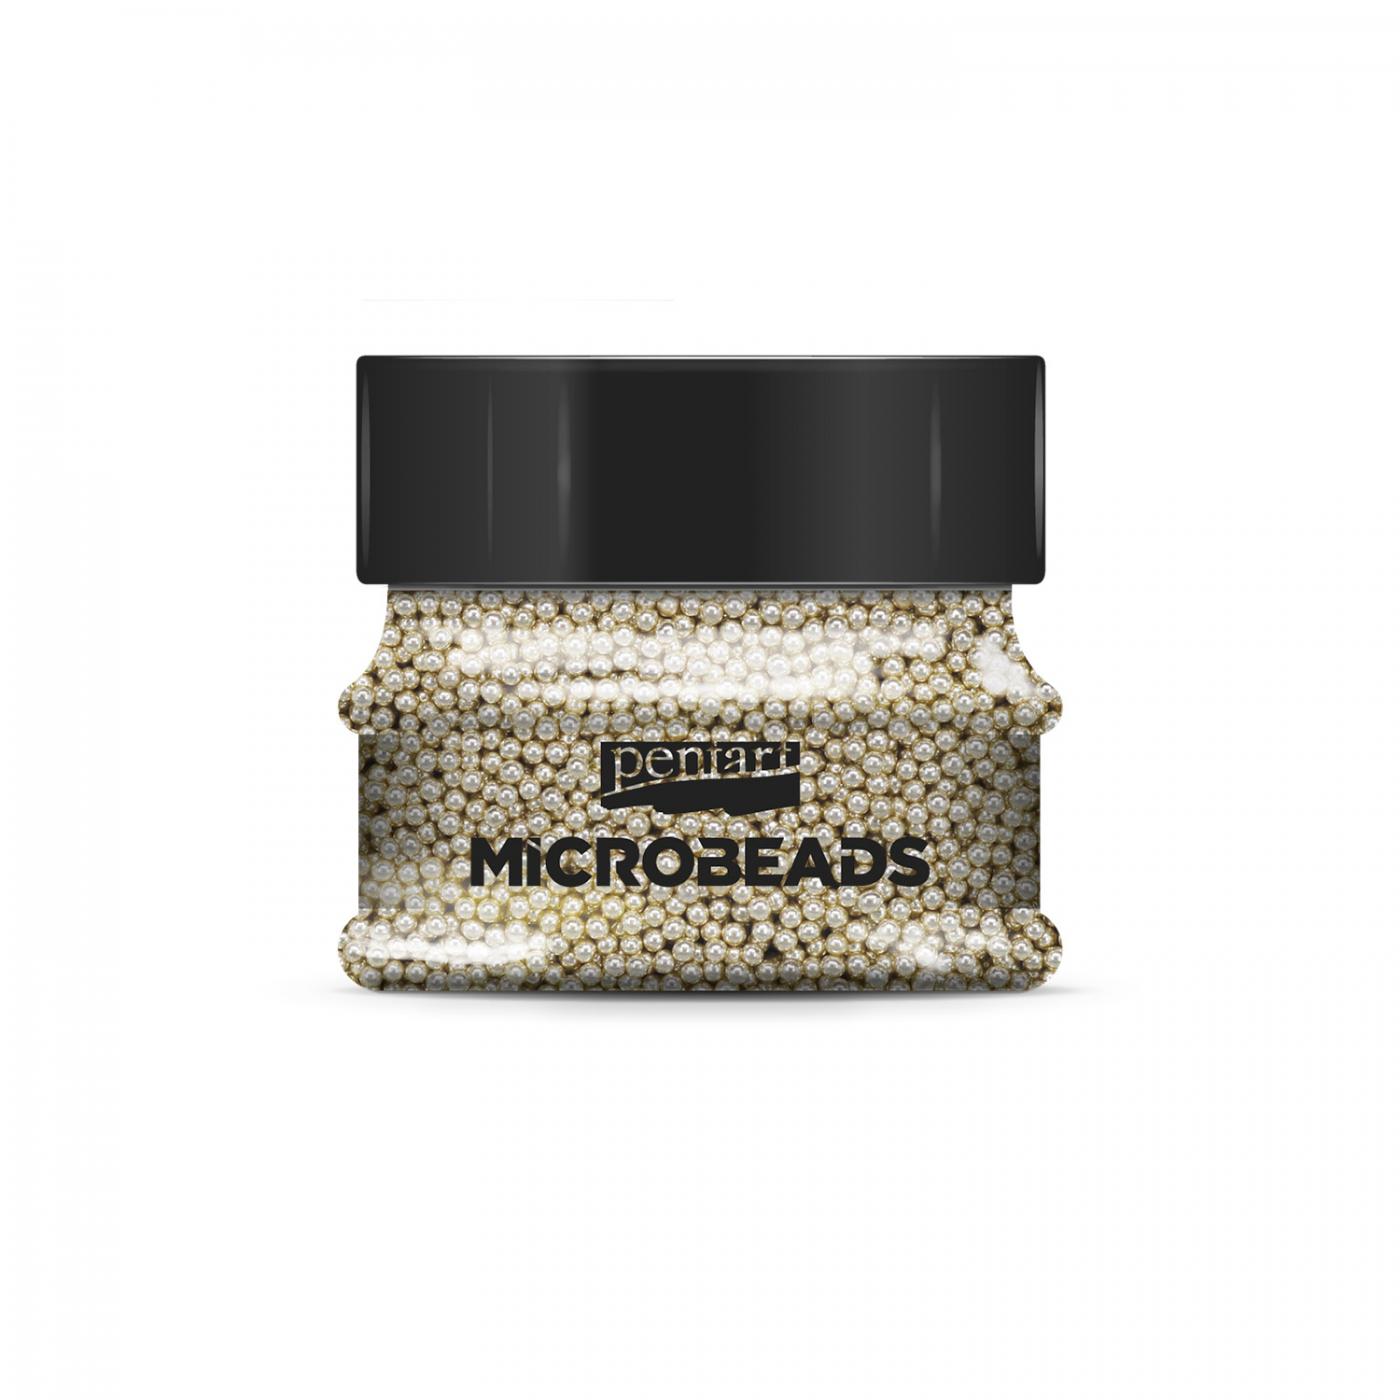 Sklenené mikro-perličky, 0,8-1 mm, 40 g, šampanské zlaté